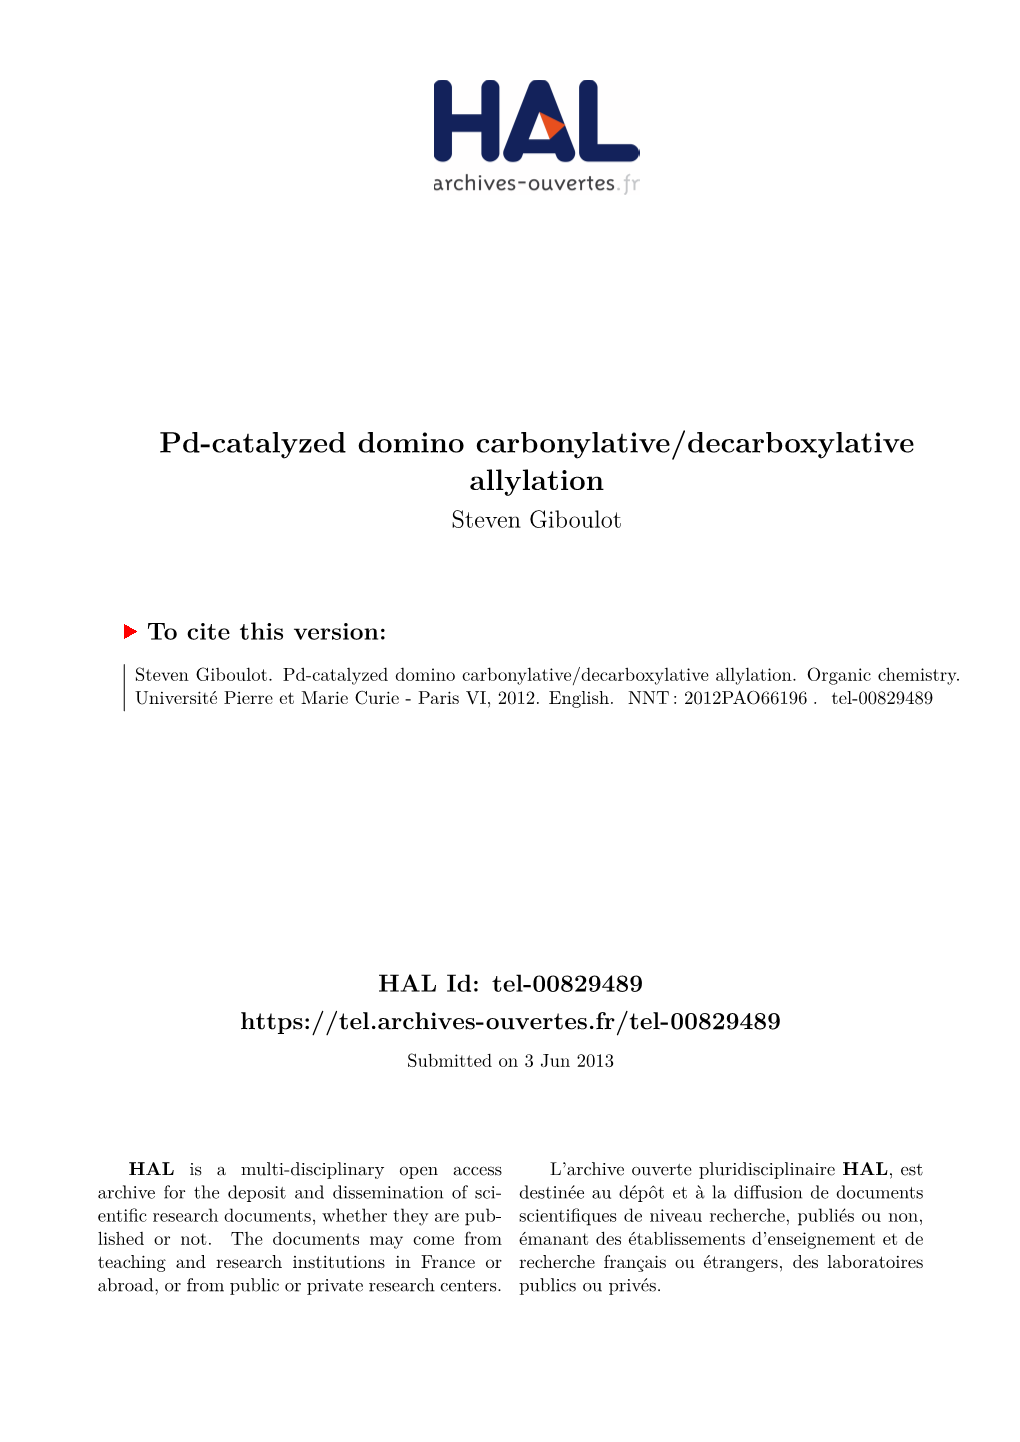 Pd-Catalyzed Domino Carbonylative/Decarboxylative Allylation Steven Giboulot